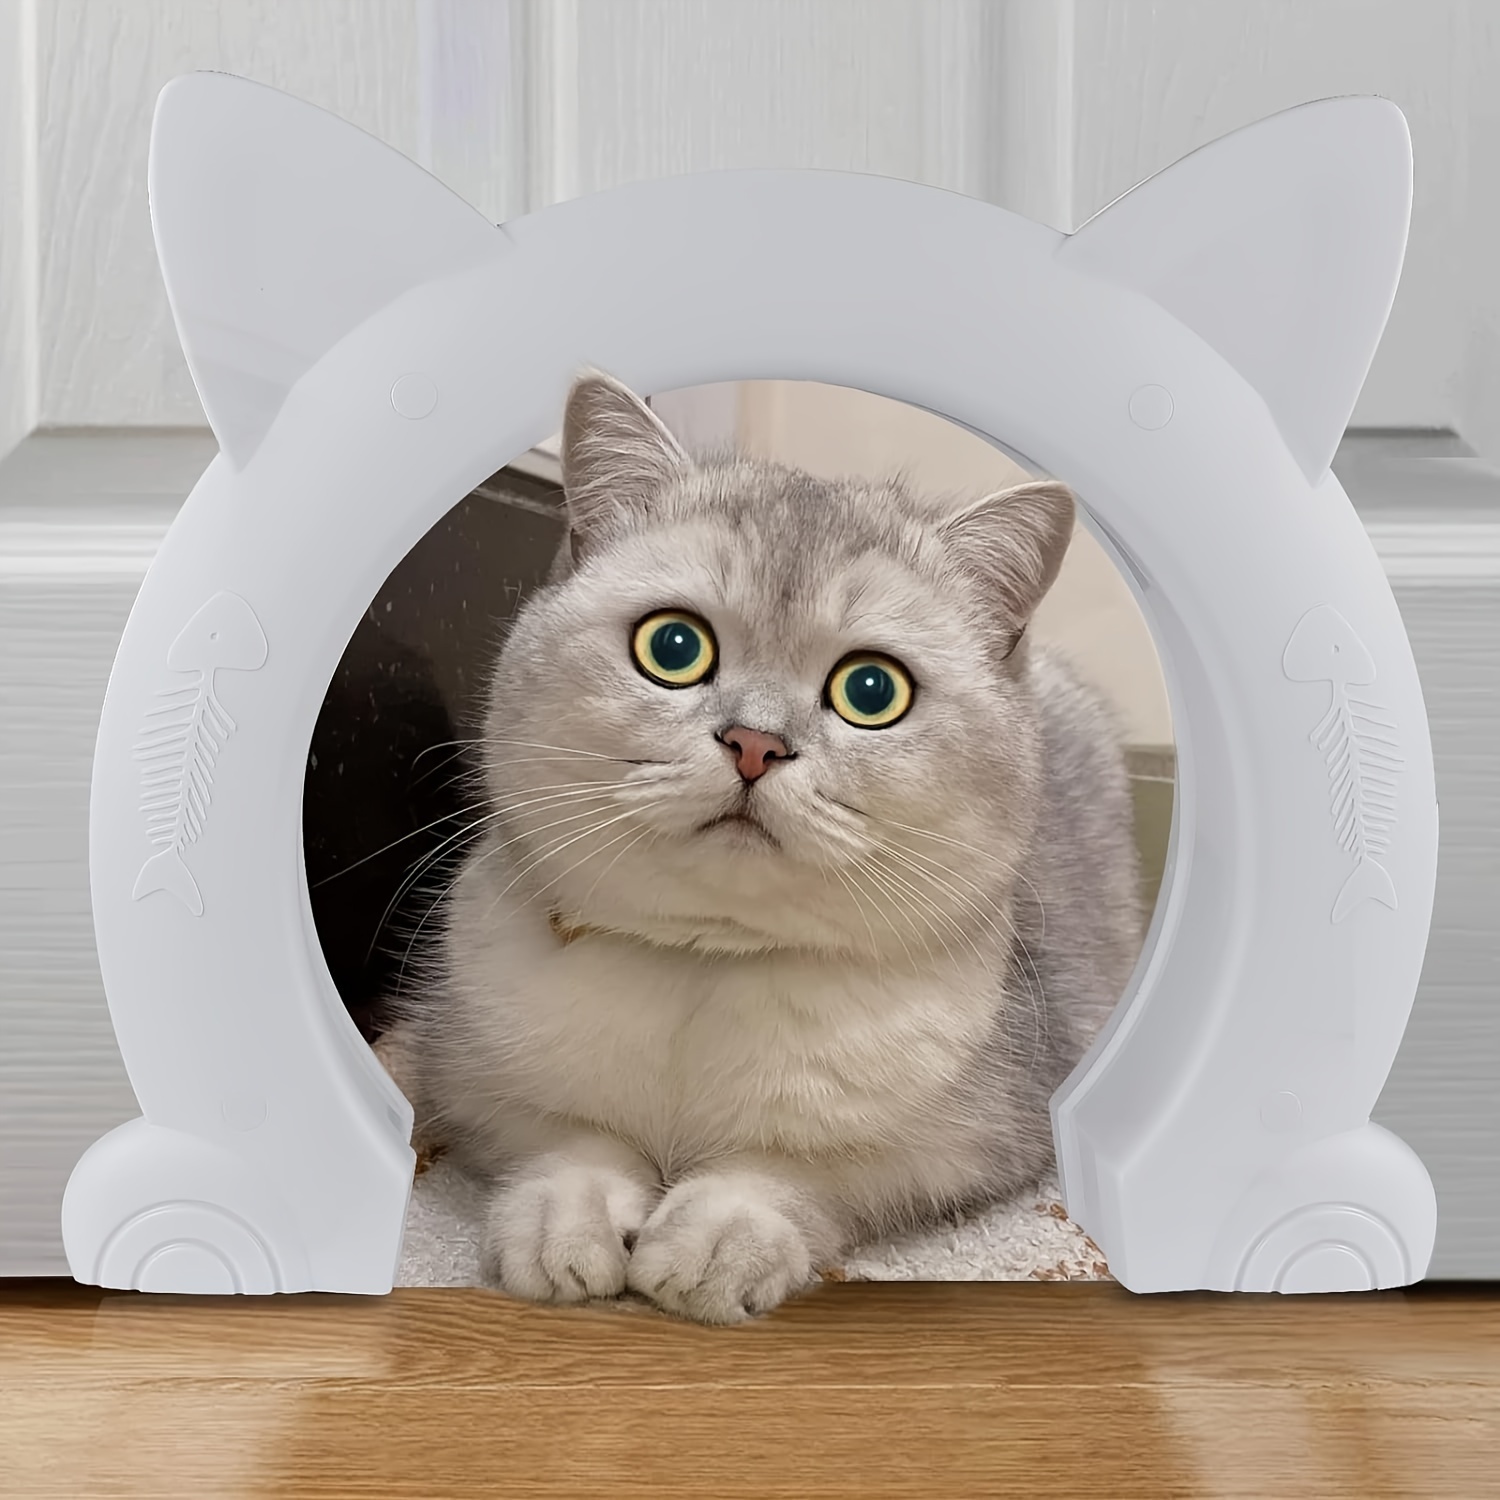 2 Stück Katzentürhalter-Verriegelung – Verstellbare Katzentür-Alternative,  Um Hunde Von Katzentoiletten Und Futter Fernzuhalten, Flexibler Riegel Für